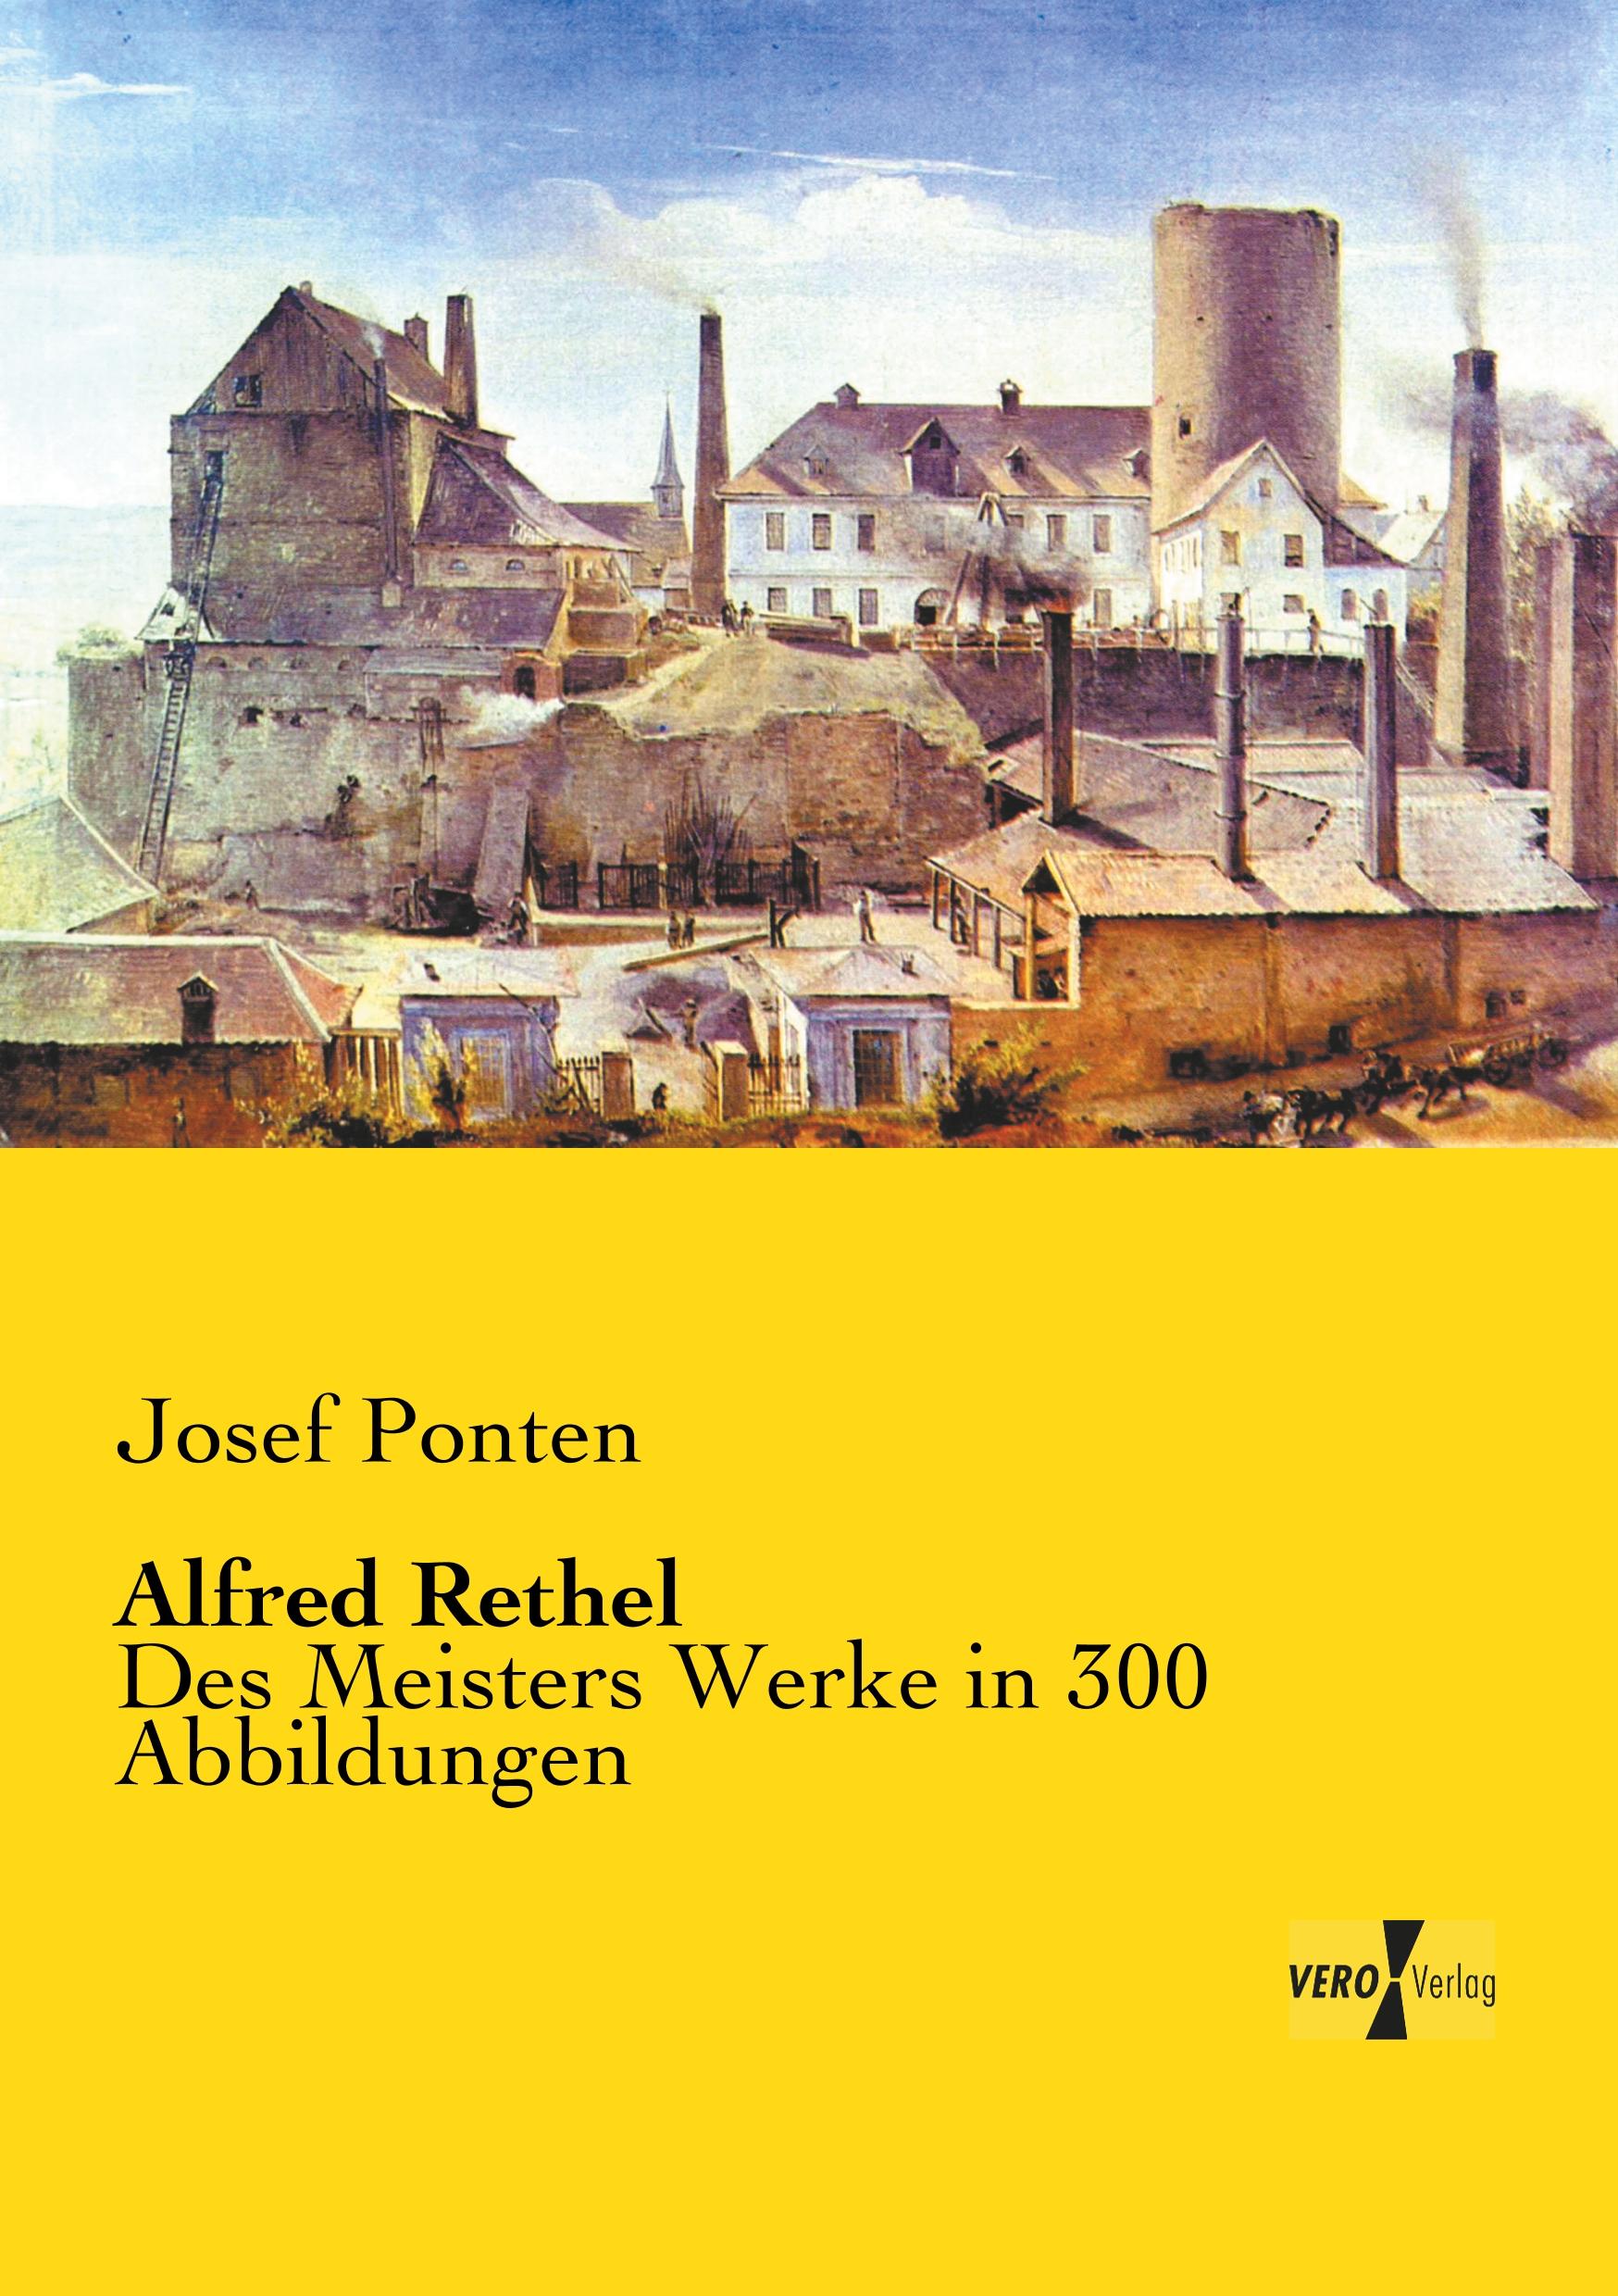 Alfred Rethel | Des Meisters Werke in 300 Abbildungen | Josef Ponten | Taschenbuch | Paperback | 288 S. | Deutsch | 2019 | Vero Verlag | EAN 9783737205580 - Ponten, Josef